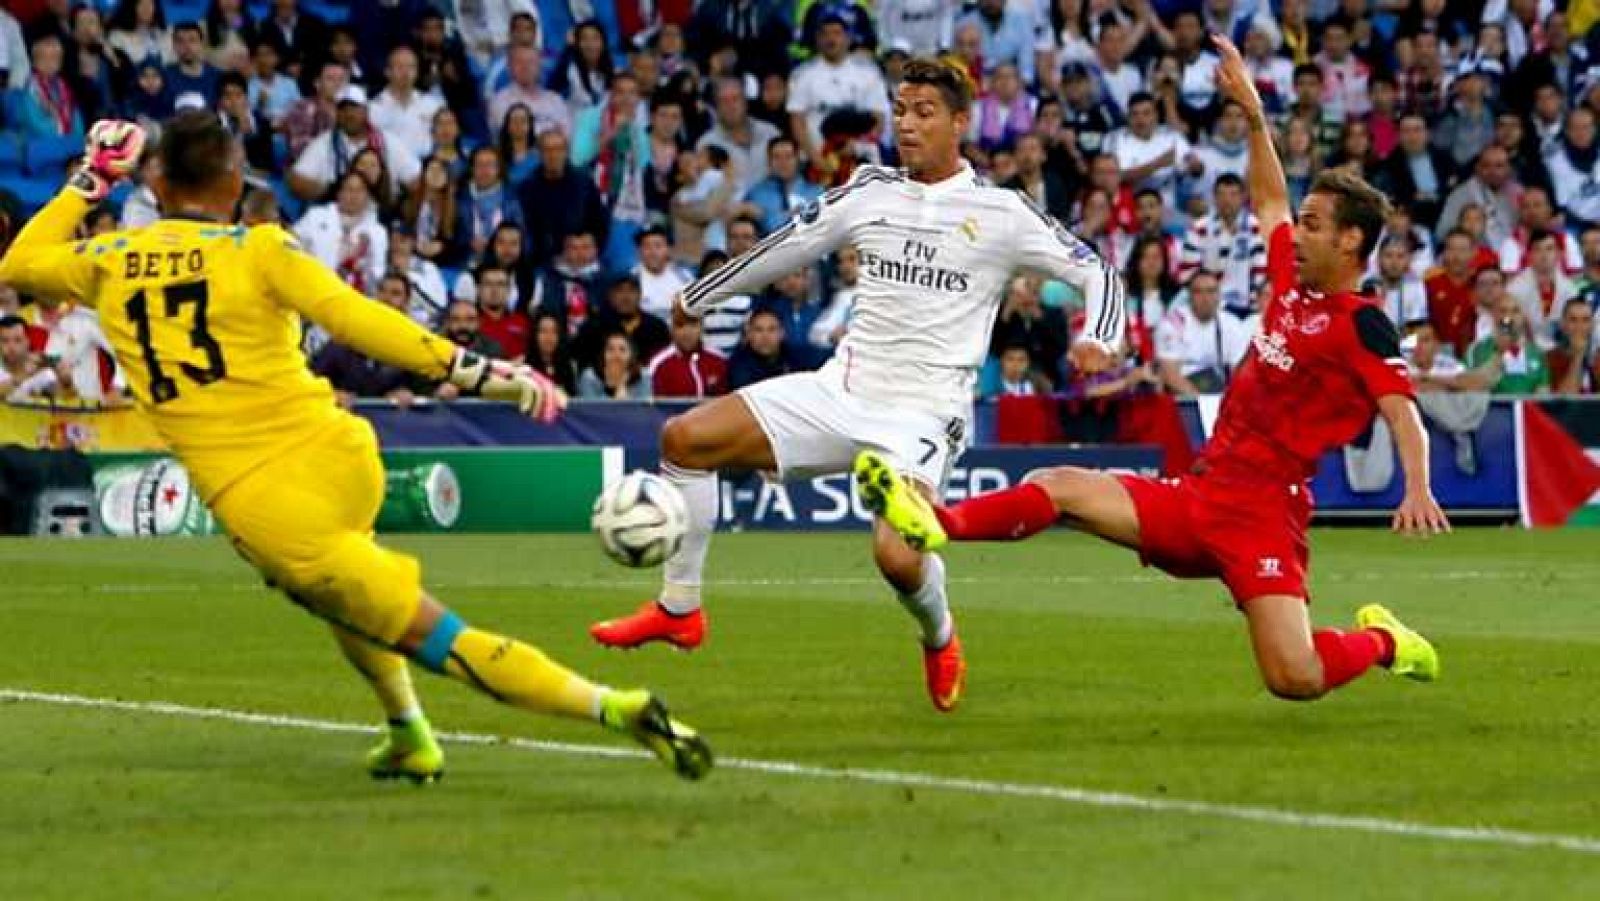 Supercopa de Europa - Partido completo: Real Madrid - Sevilla - ver ahora